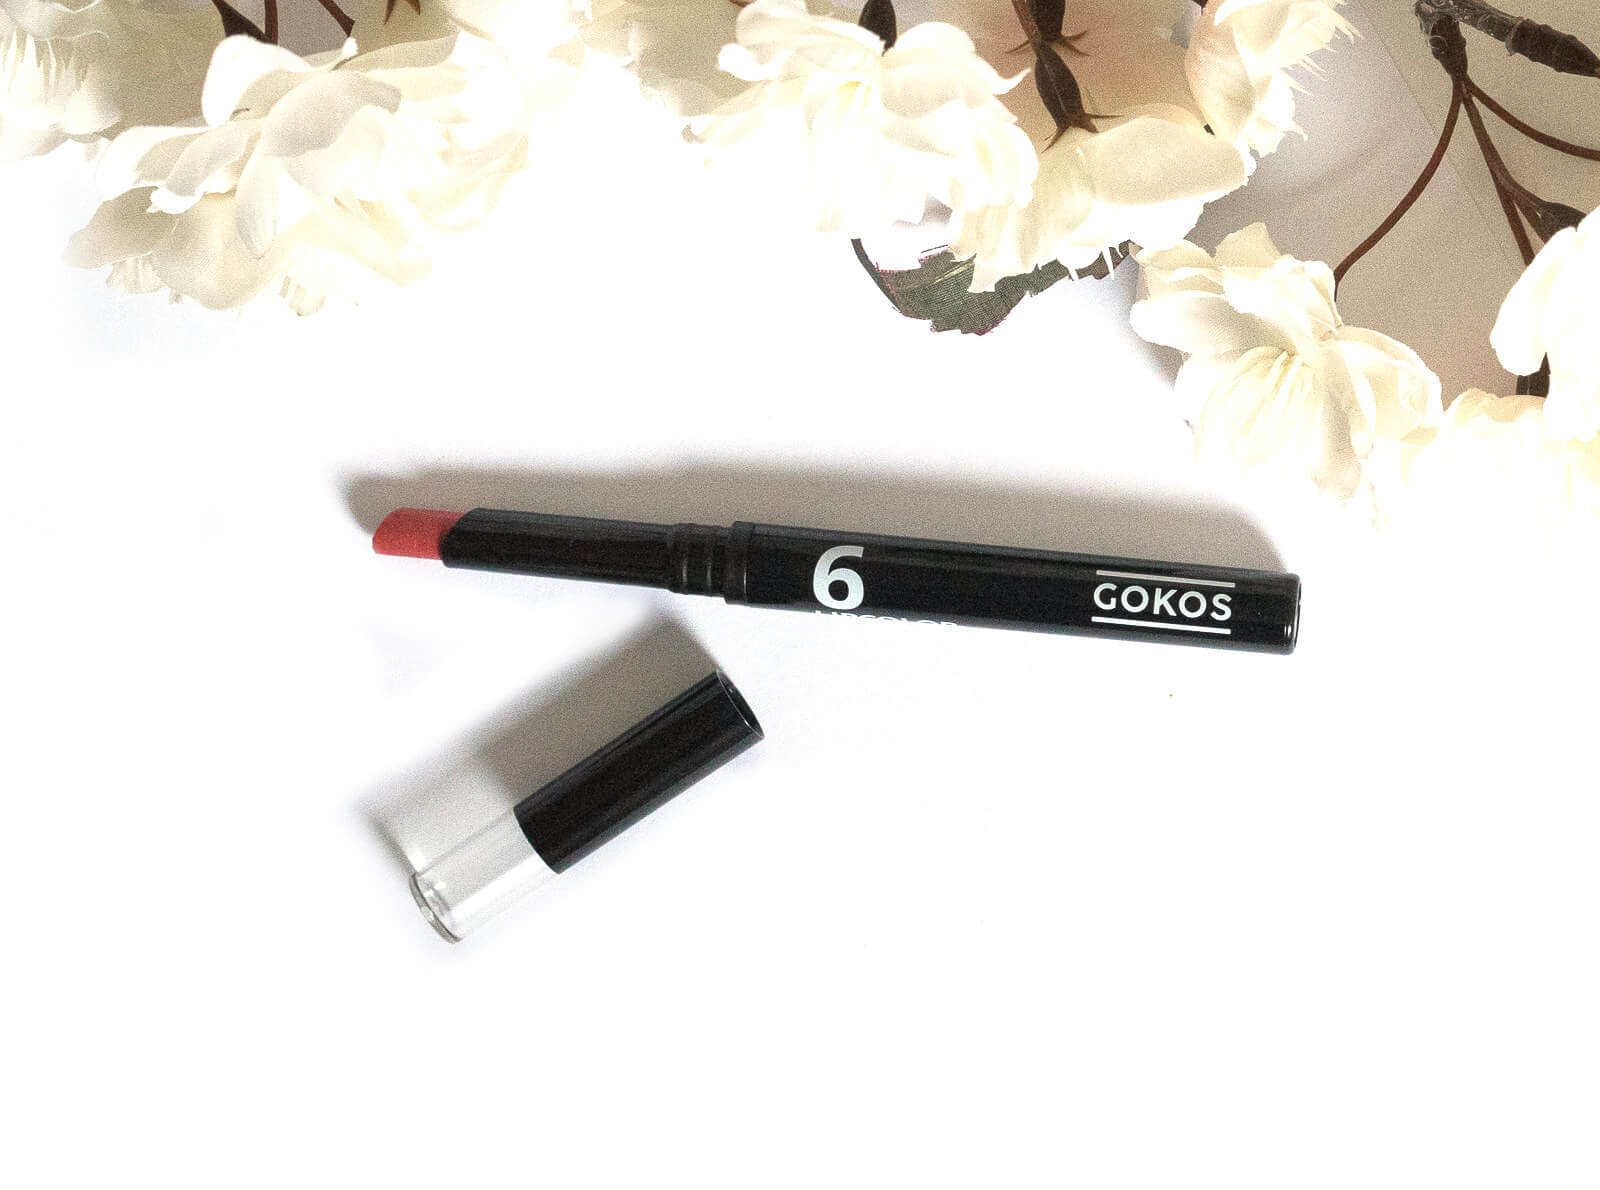 GOKOS - Beauty to go - Indie-Makeup-Brand mit Stiften 142